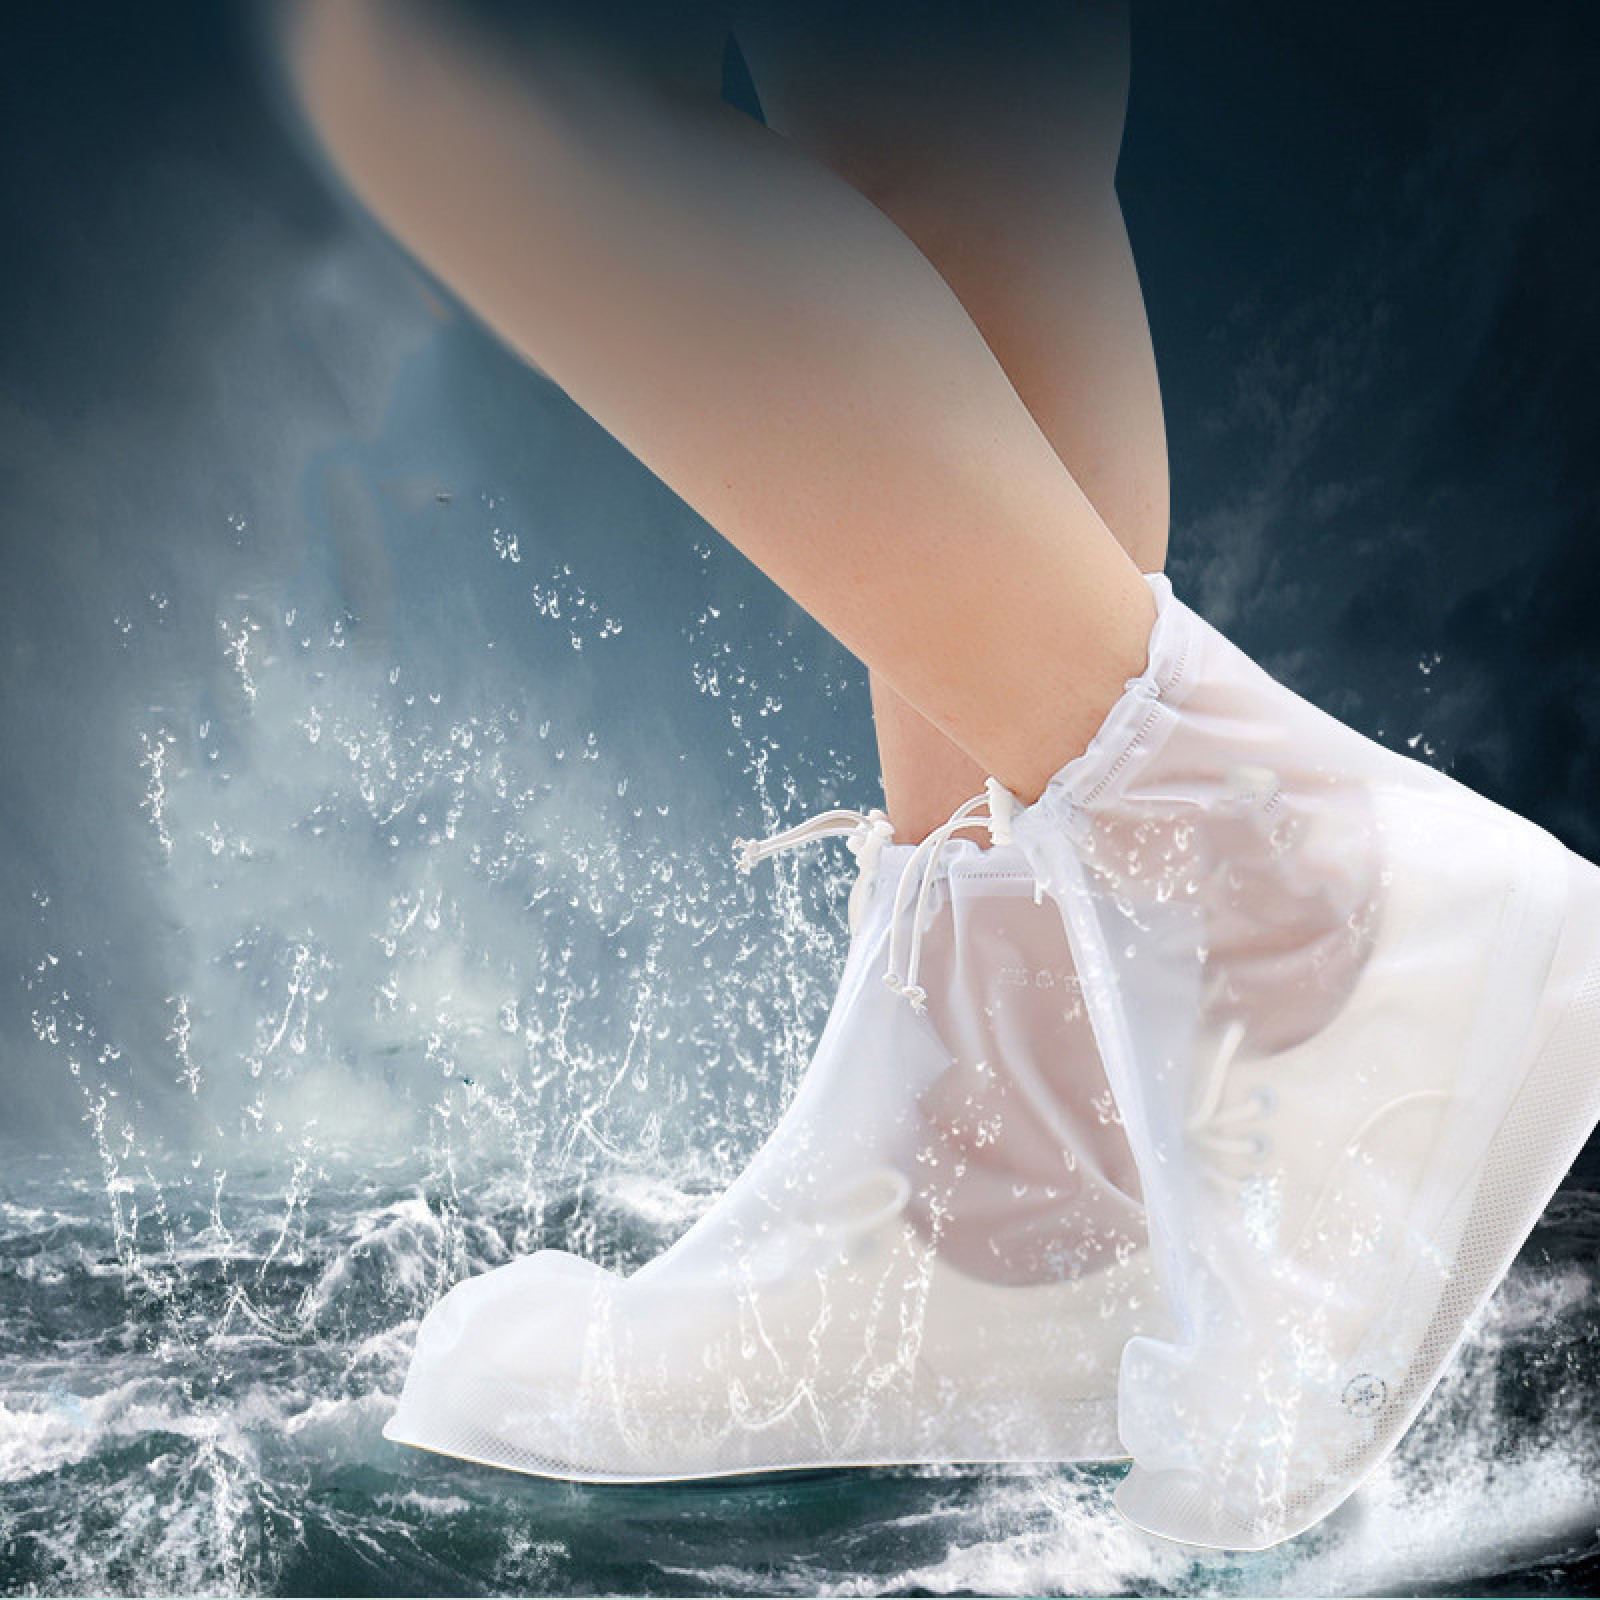 Дождевики для обуви, бахилы от дождя, чехлы для обуви Белые Размер XL 183558